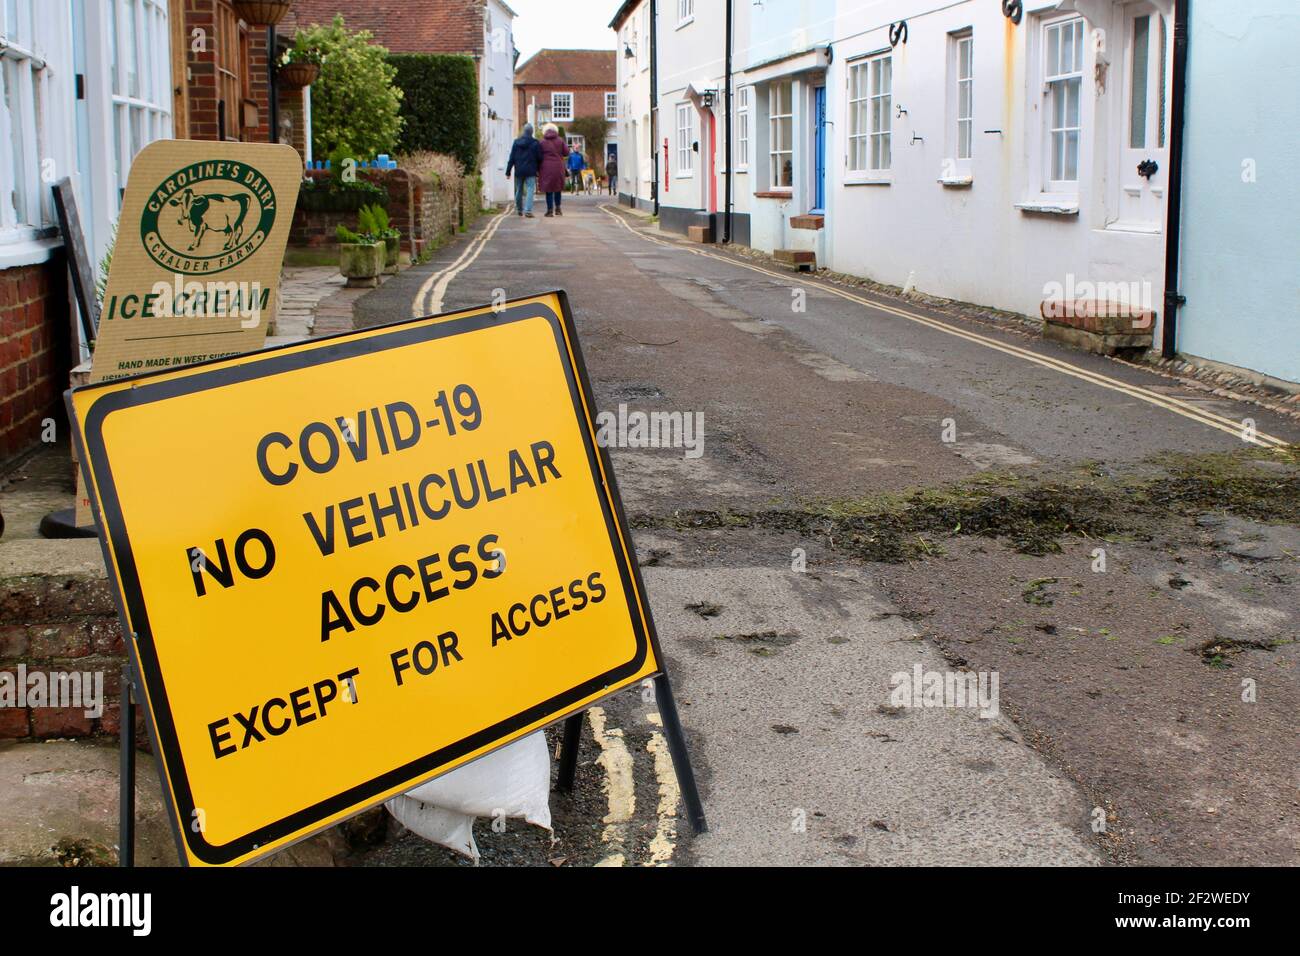 Covid-19 Warnschild weist auf keinen Fahrzeugzugang außer für den Zugang. Widersprüchliche Führung in einer kleinen, engen Straße in Bosham. Eisschild Stockfoto